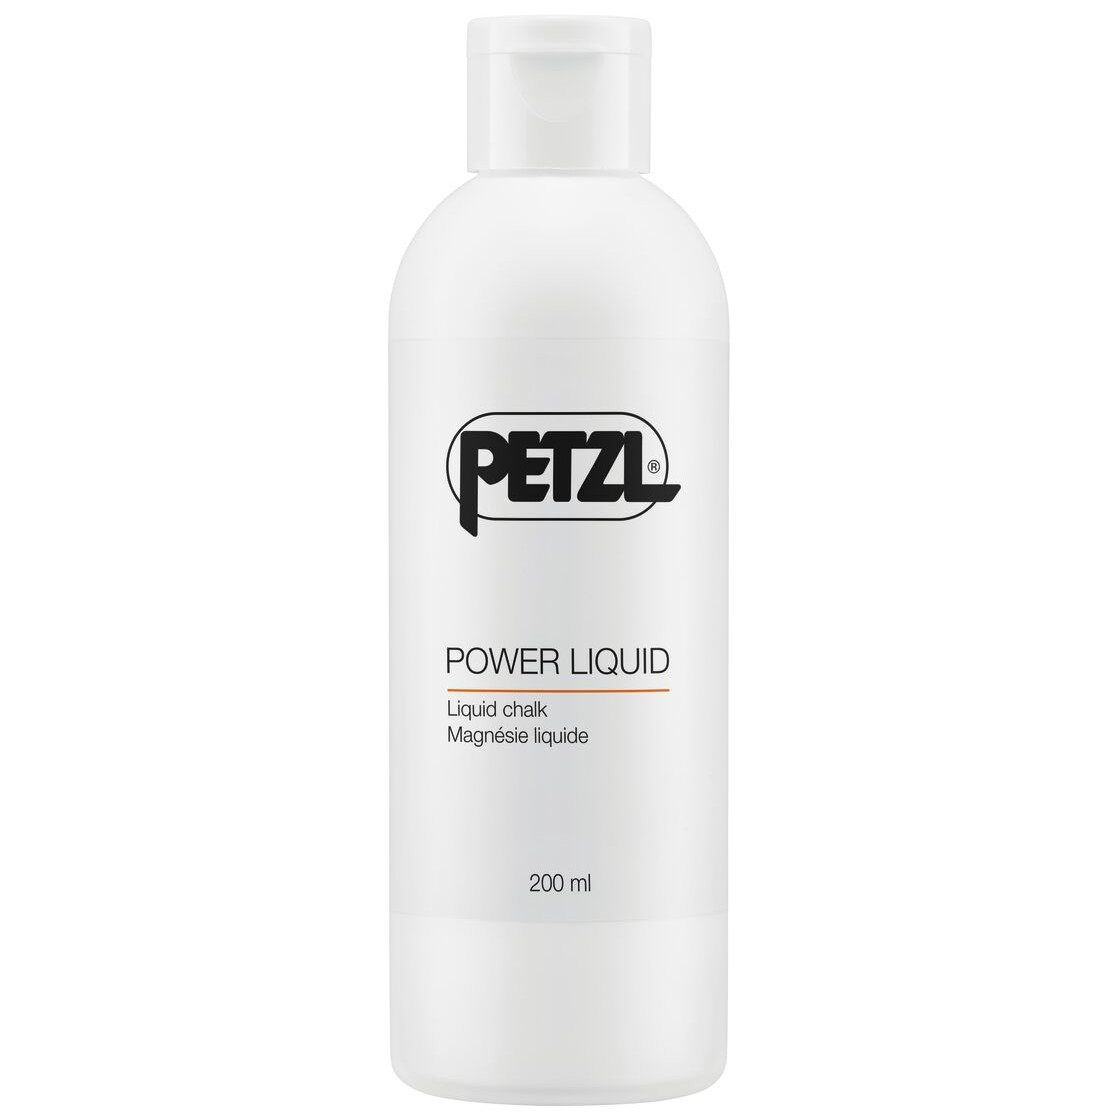 Produktbild von Petzl Power Liquid Chalk - 200ml